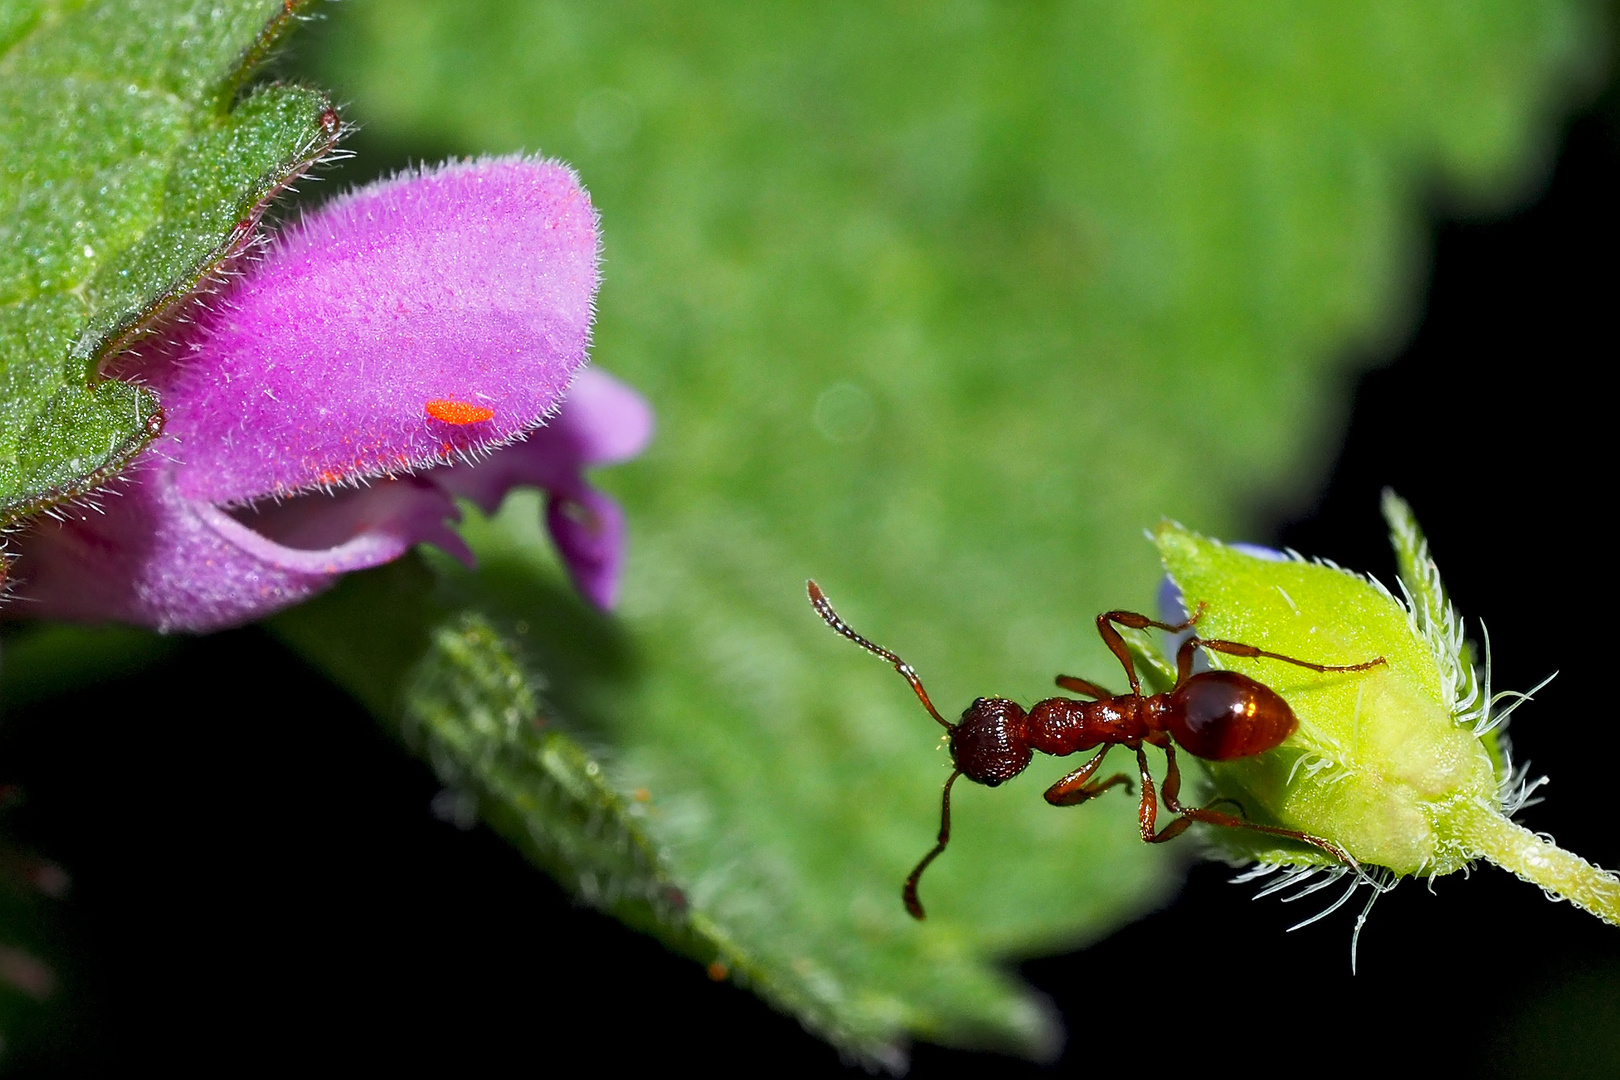 Die kleine rote Ameise sucht den direktesten Weg zur Taubnesselblüte.